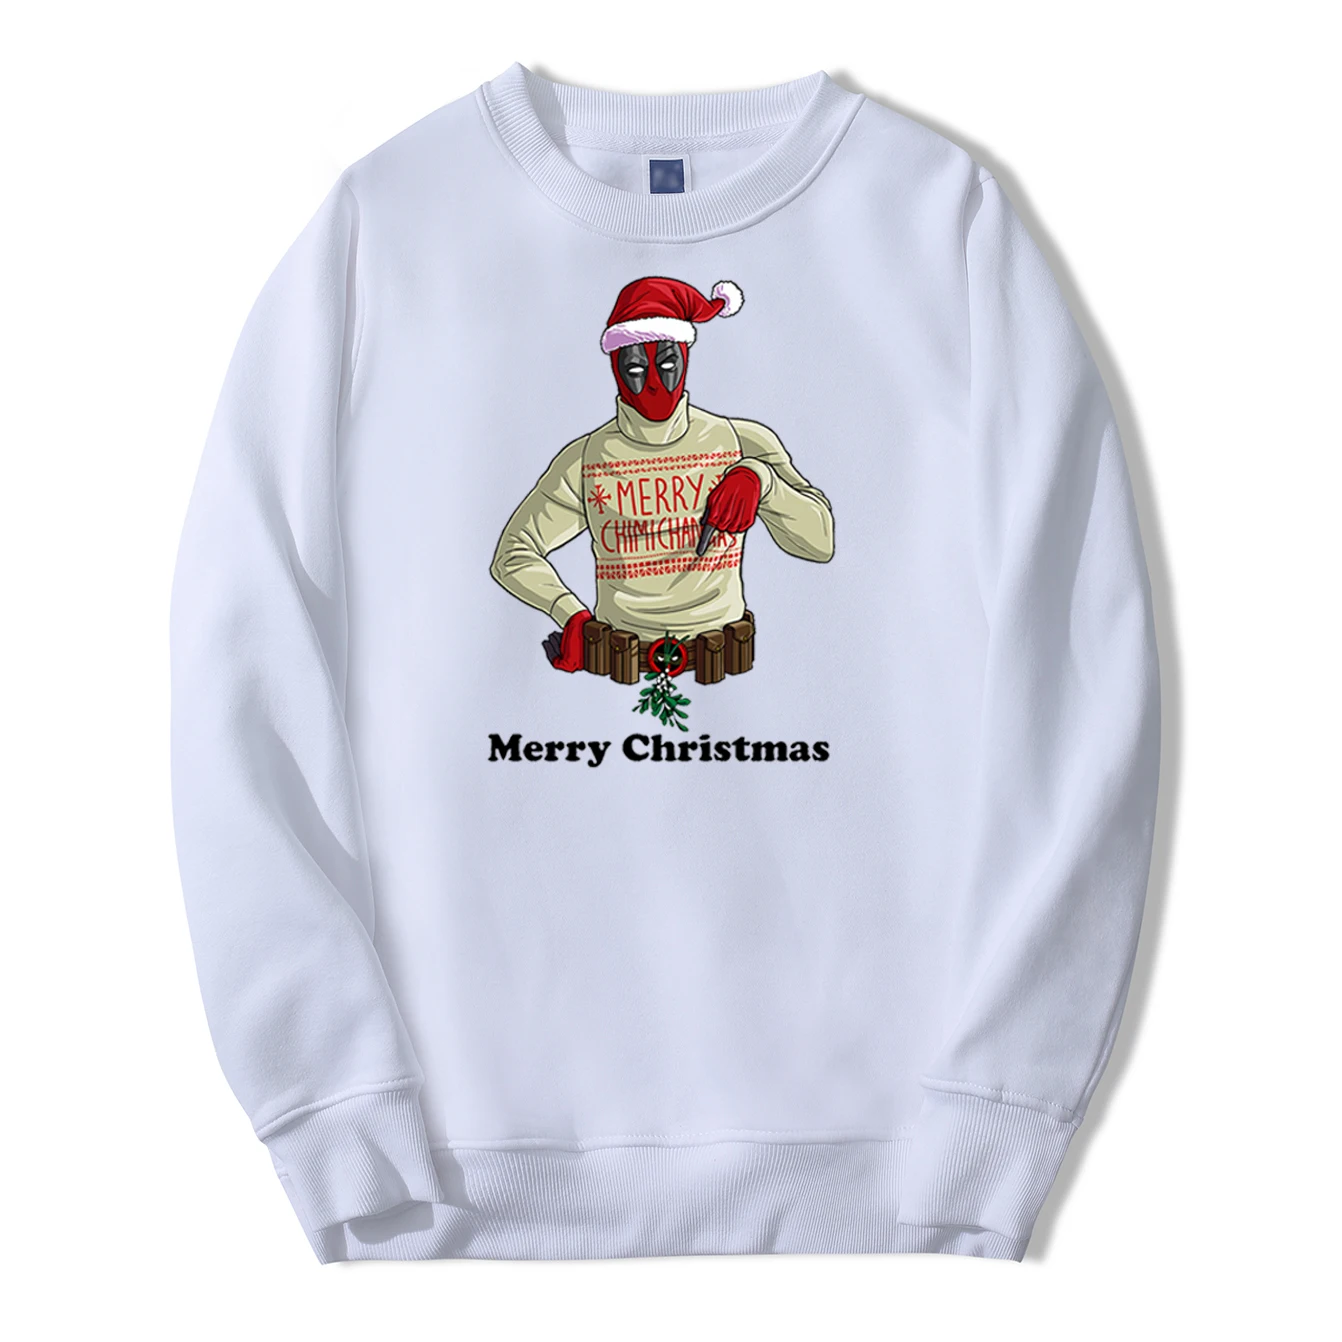 Merry Christmas Deadpool мужские толстовки с капюшоном, Повседневная флисовая уличная Осенняя толстовка, модные теплые толстовки с капюшоном на год - Цвет: White 1